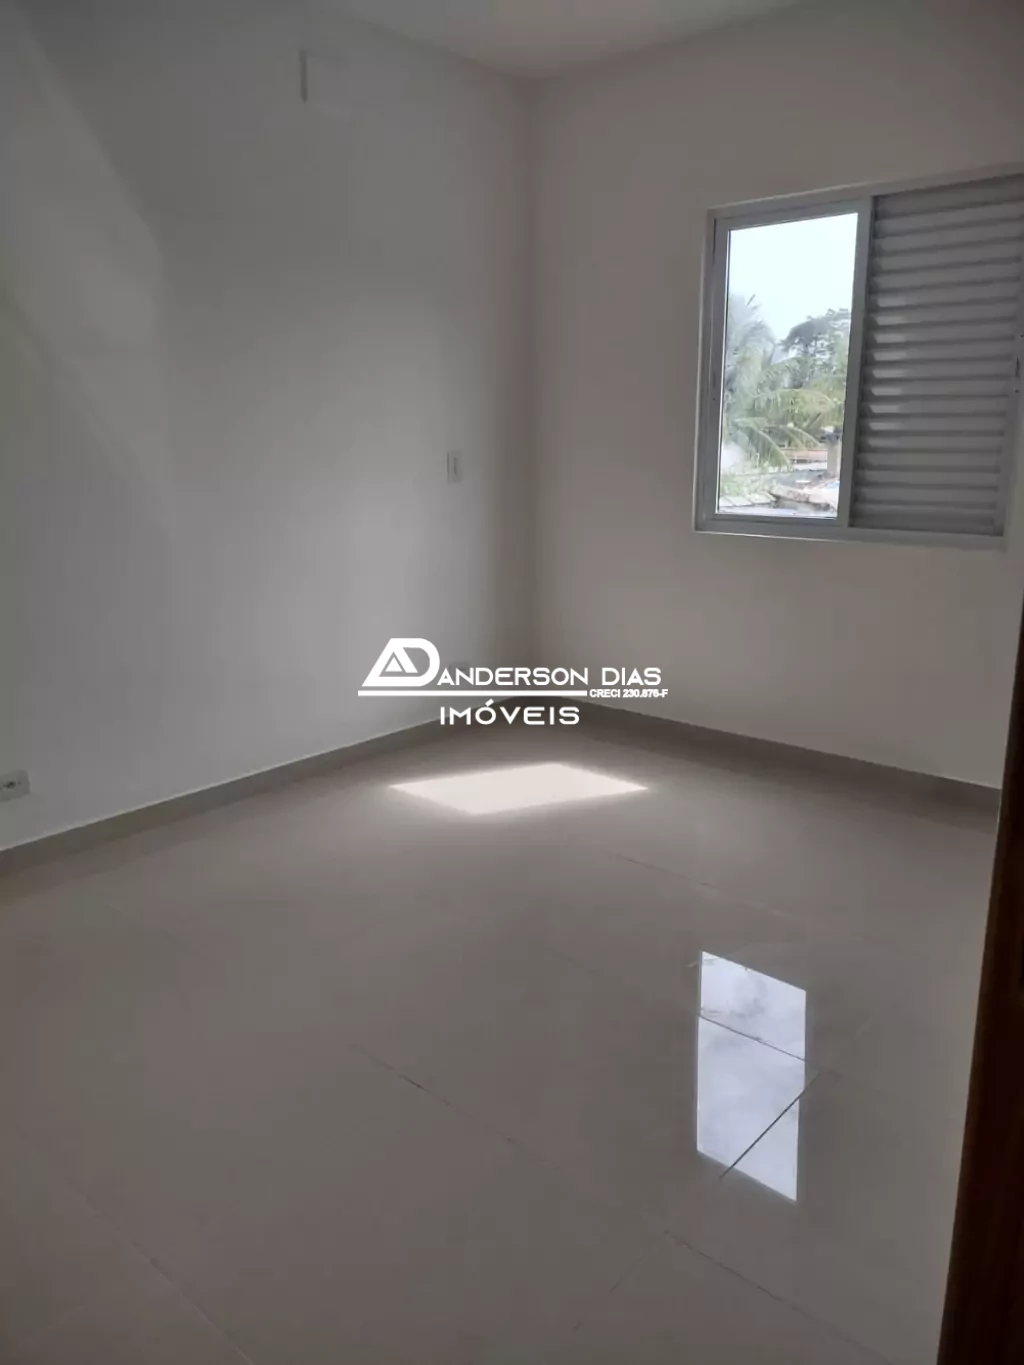 Casa em Condomínio com 1 dormitórios com 55,00m² para locação definitiva por R$1.400,00 - Praia das Palmeiras - Caraguat